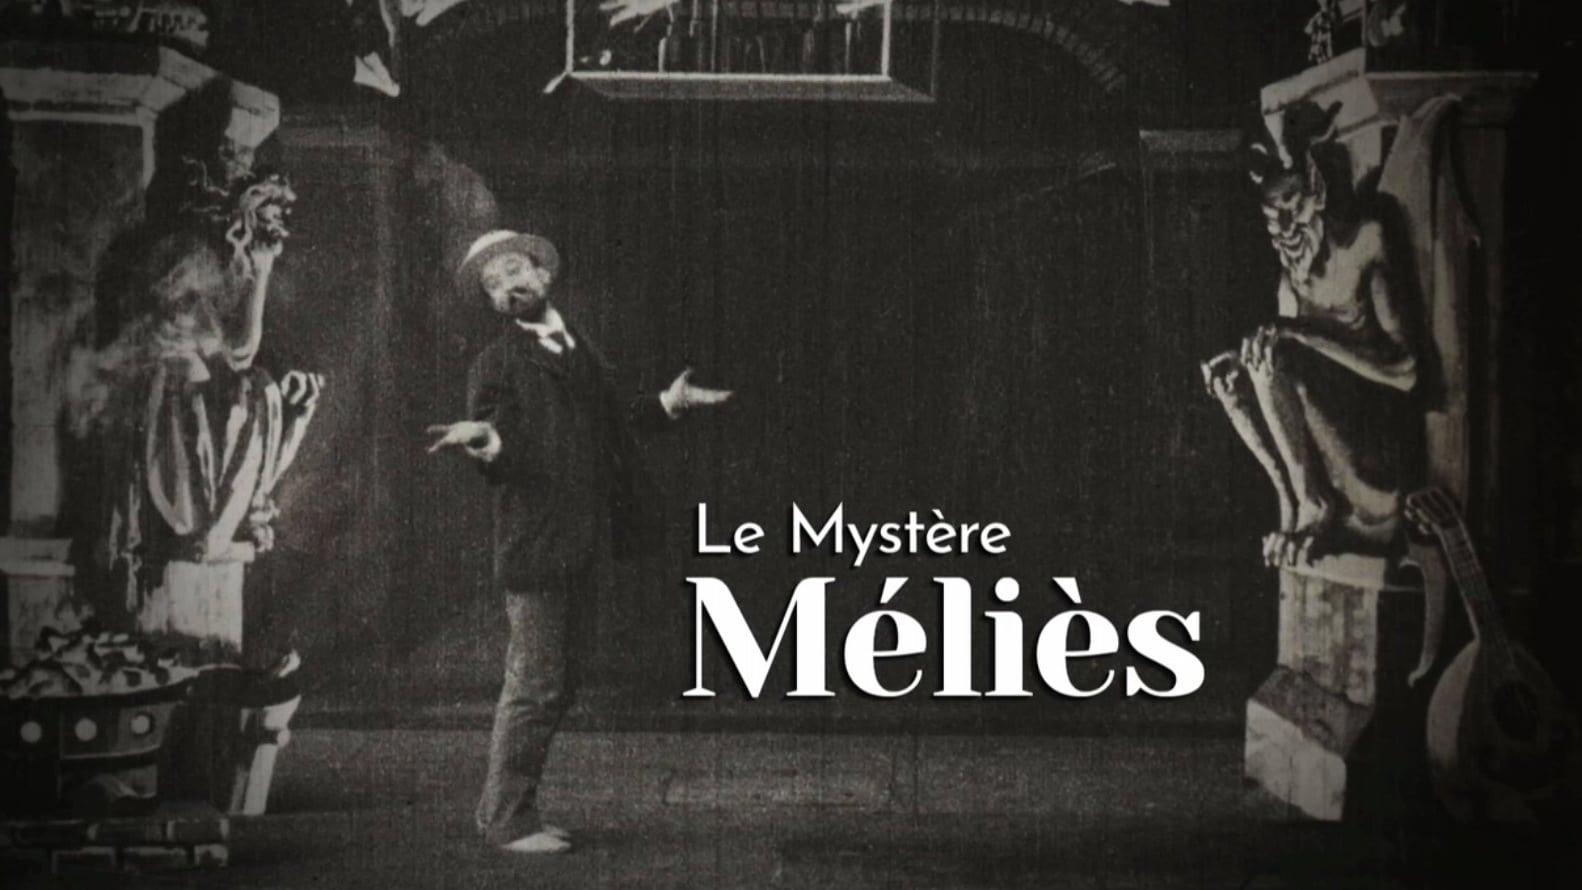 The Méliès Mystery backdrop